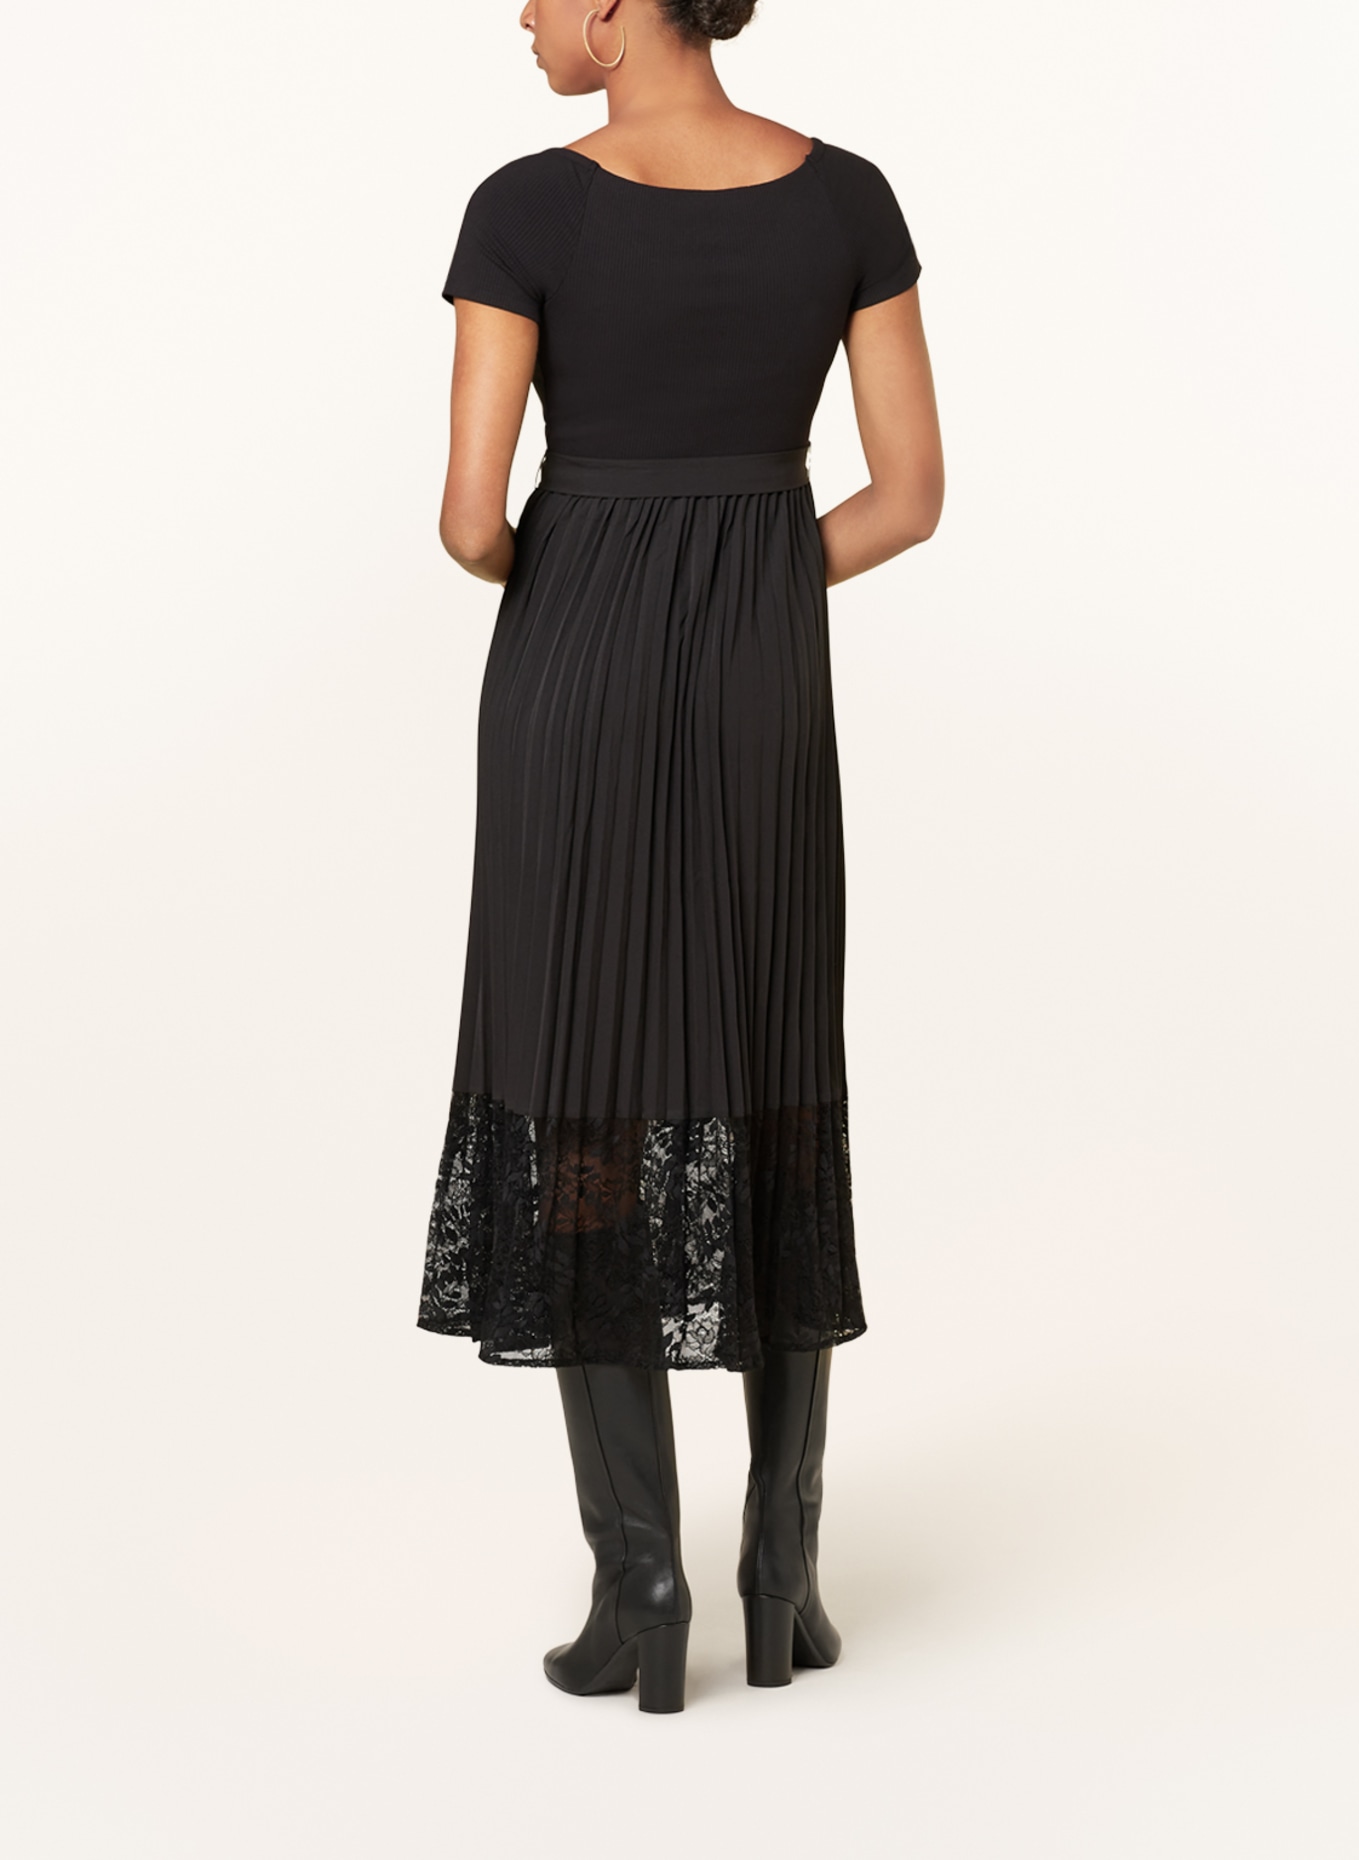 GUESS Kleid TIANA im Materialmix mit Spitze, Farbe: SCHWARZ (Bild 3)